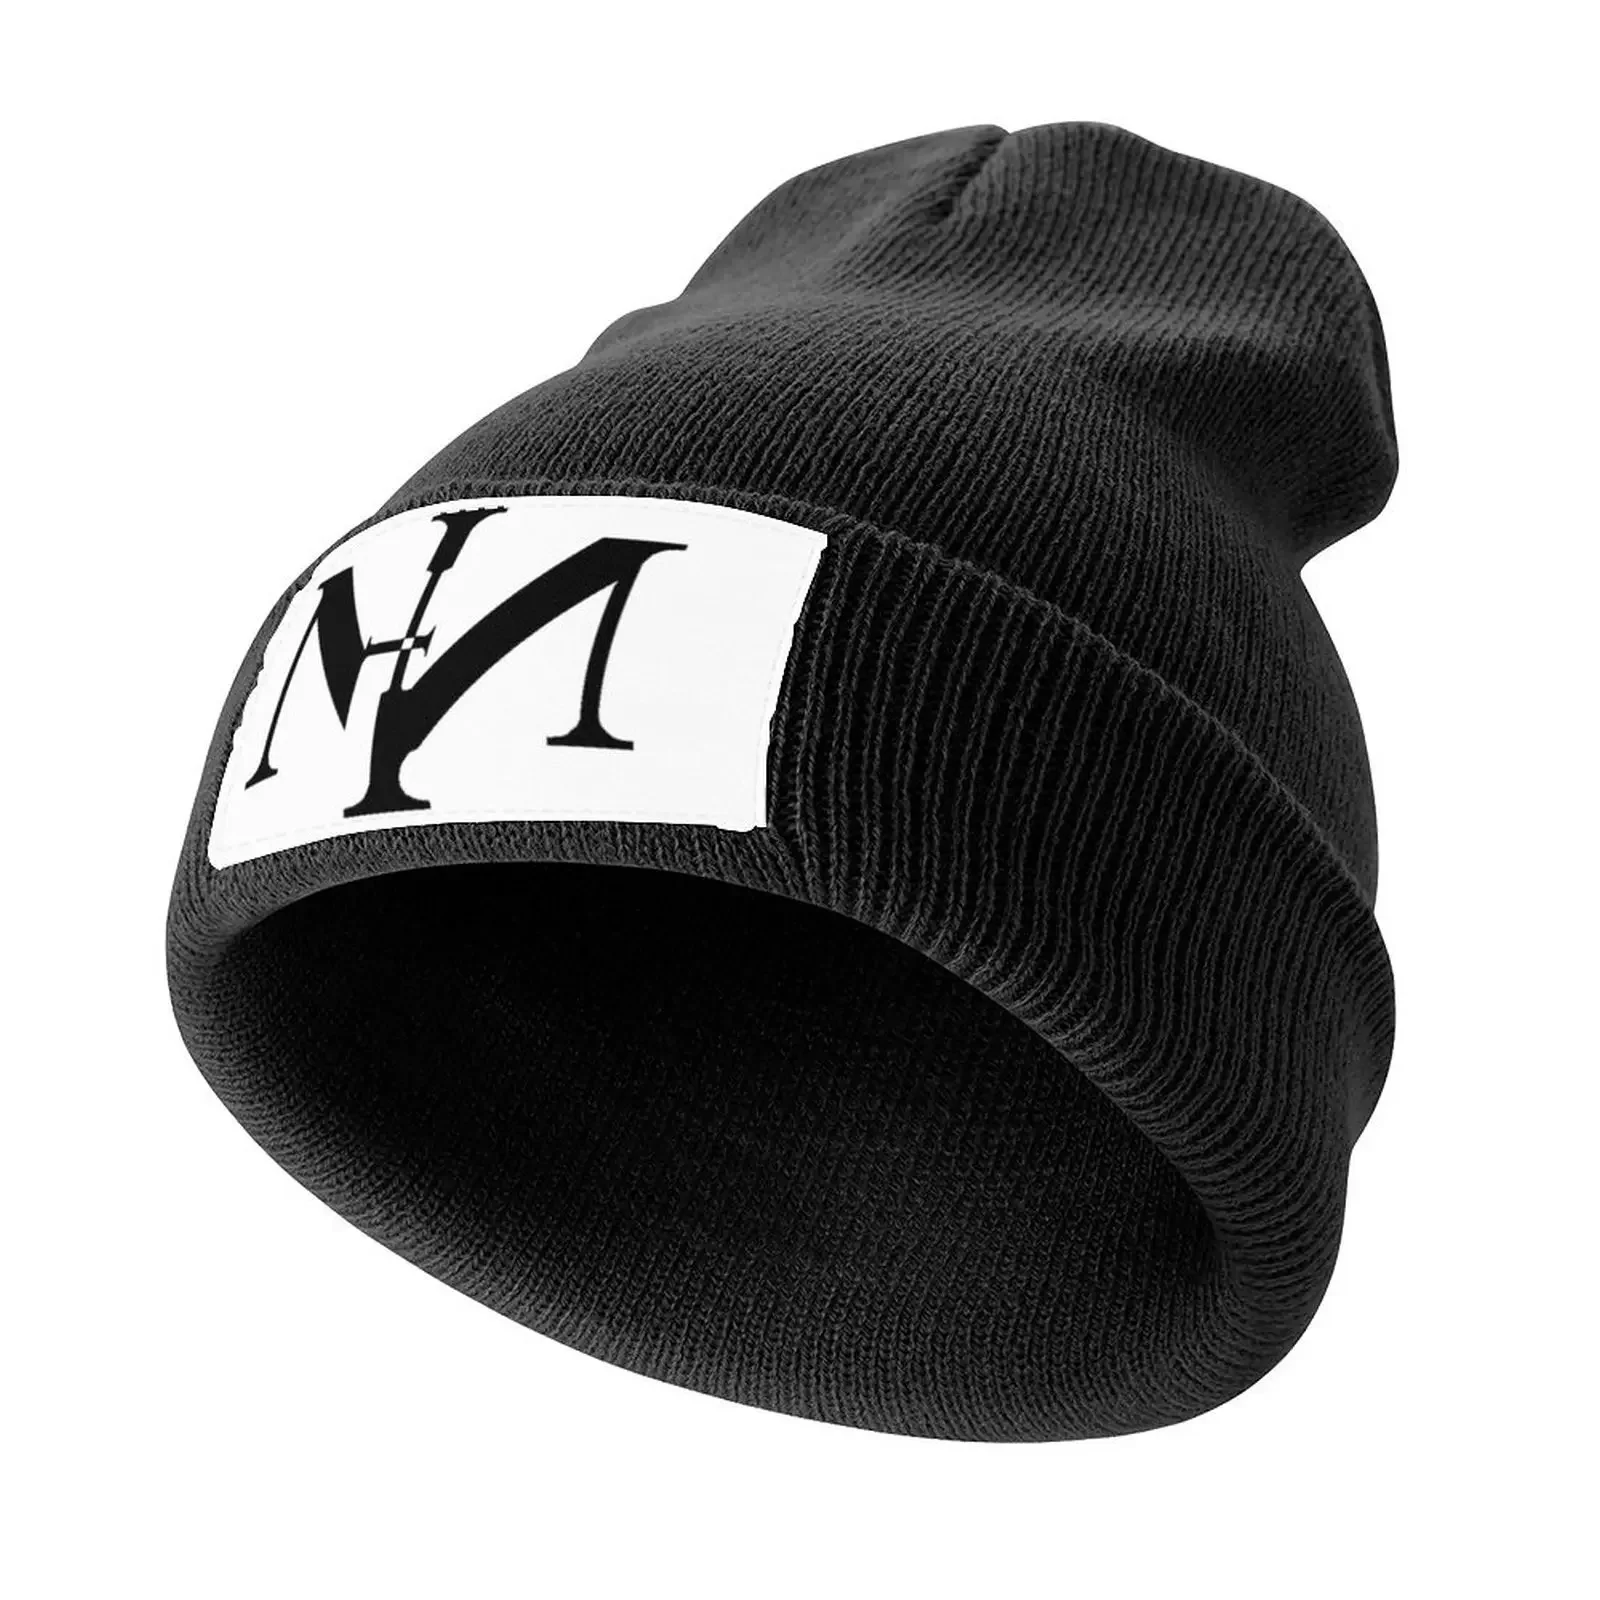 

Вязаная шапка с логотипом |-F-| Женская одежда для гольфа от модного бренда